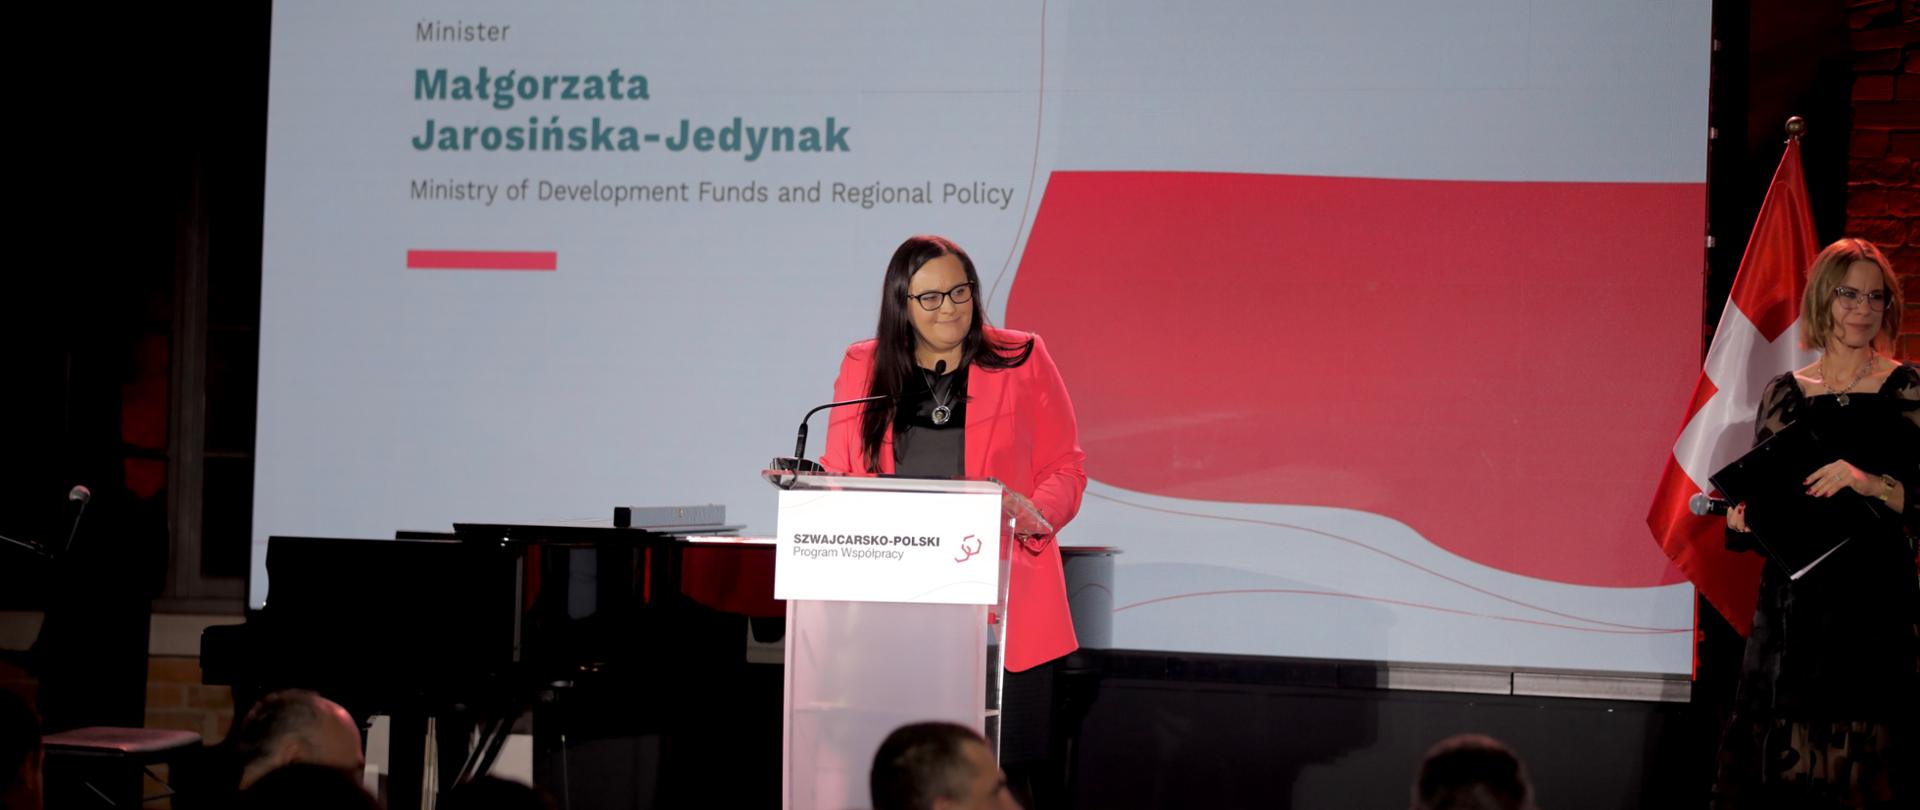 Minister Małgorzata Jarosińska-Jedynak w mównicy na scenie. Za nią flagi Polski i Szwajcarii. Obok prowadząca konferencję.